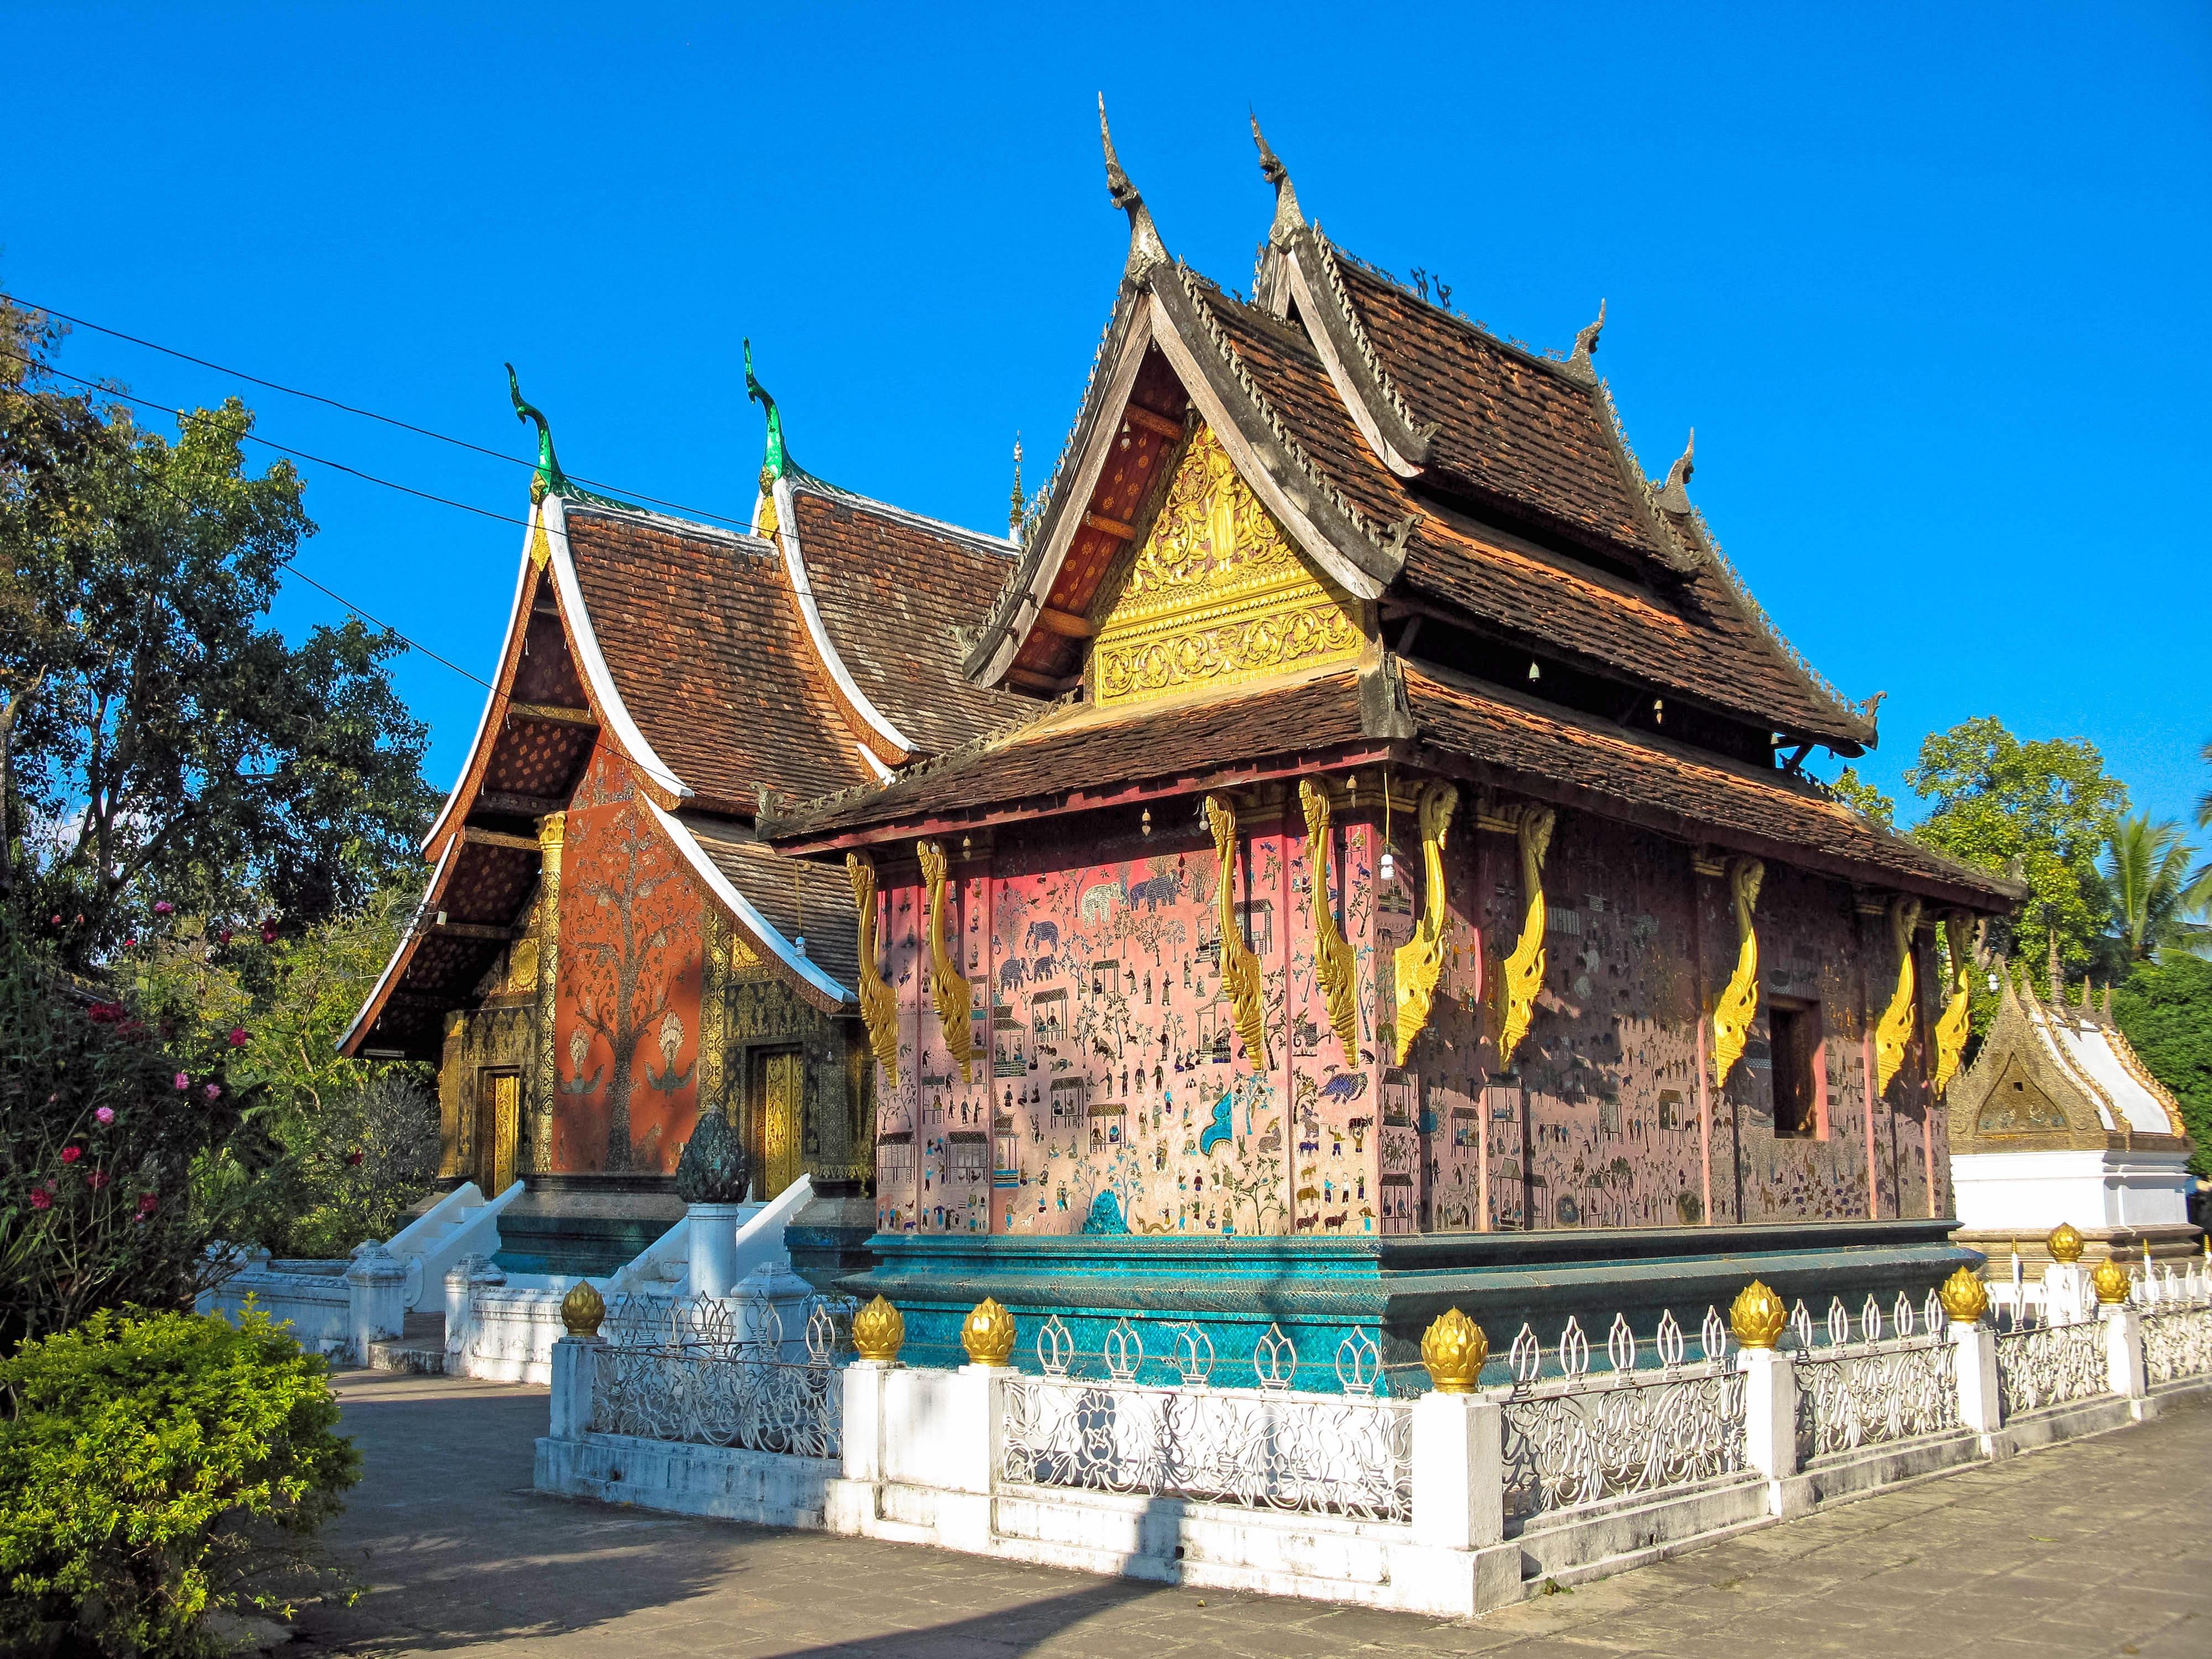 老挝旅游景点有哪些?